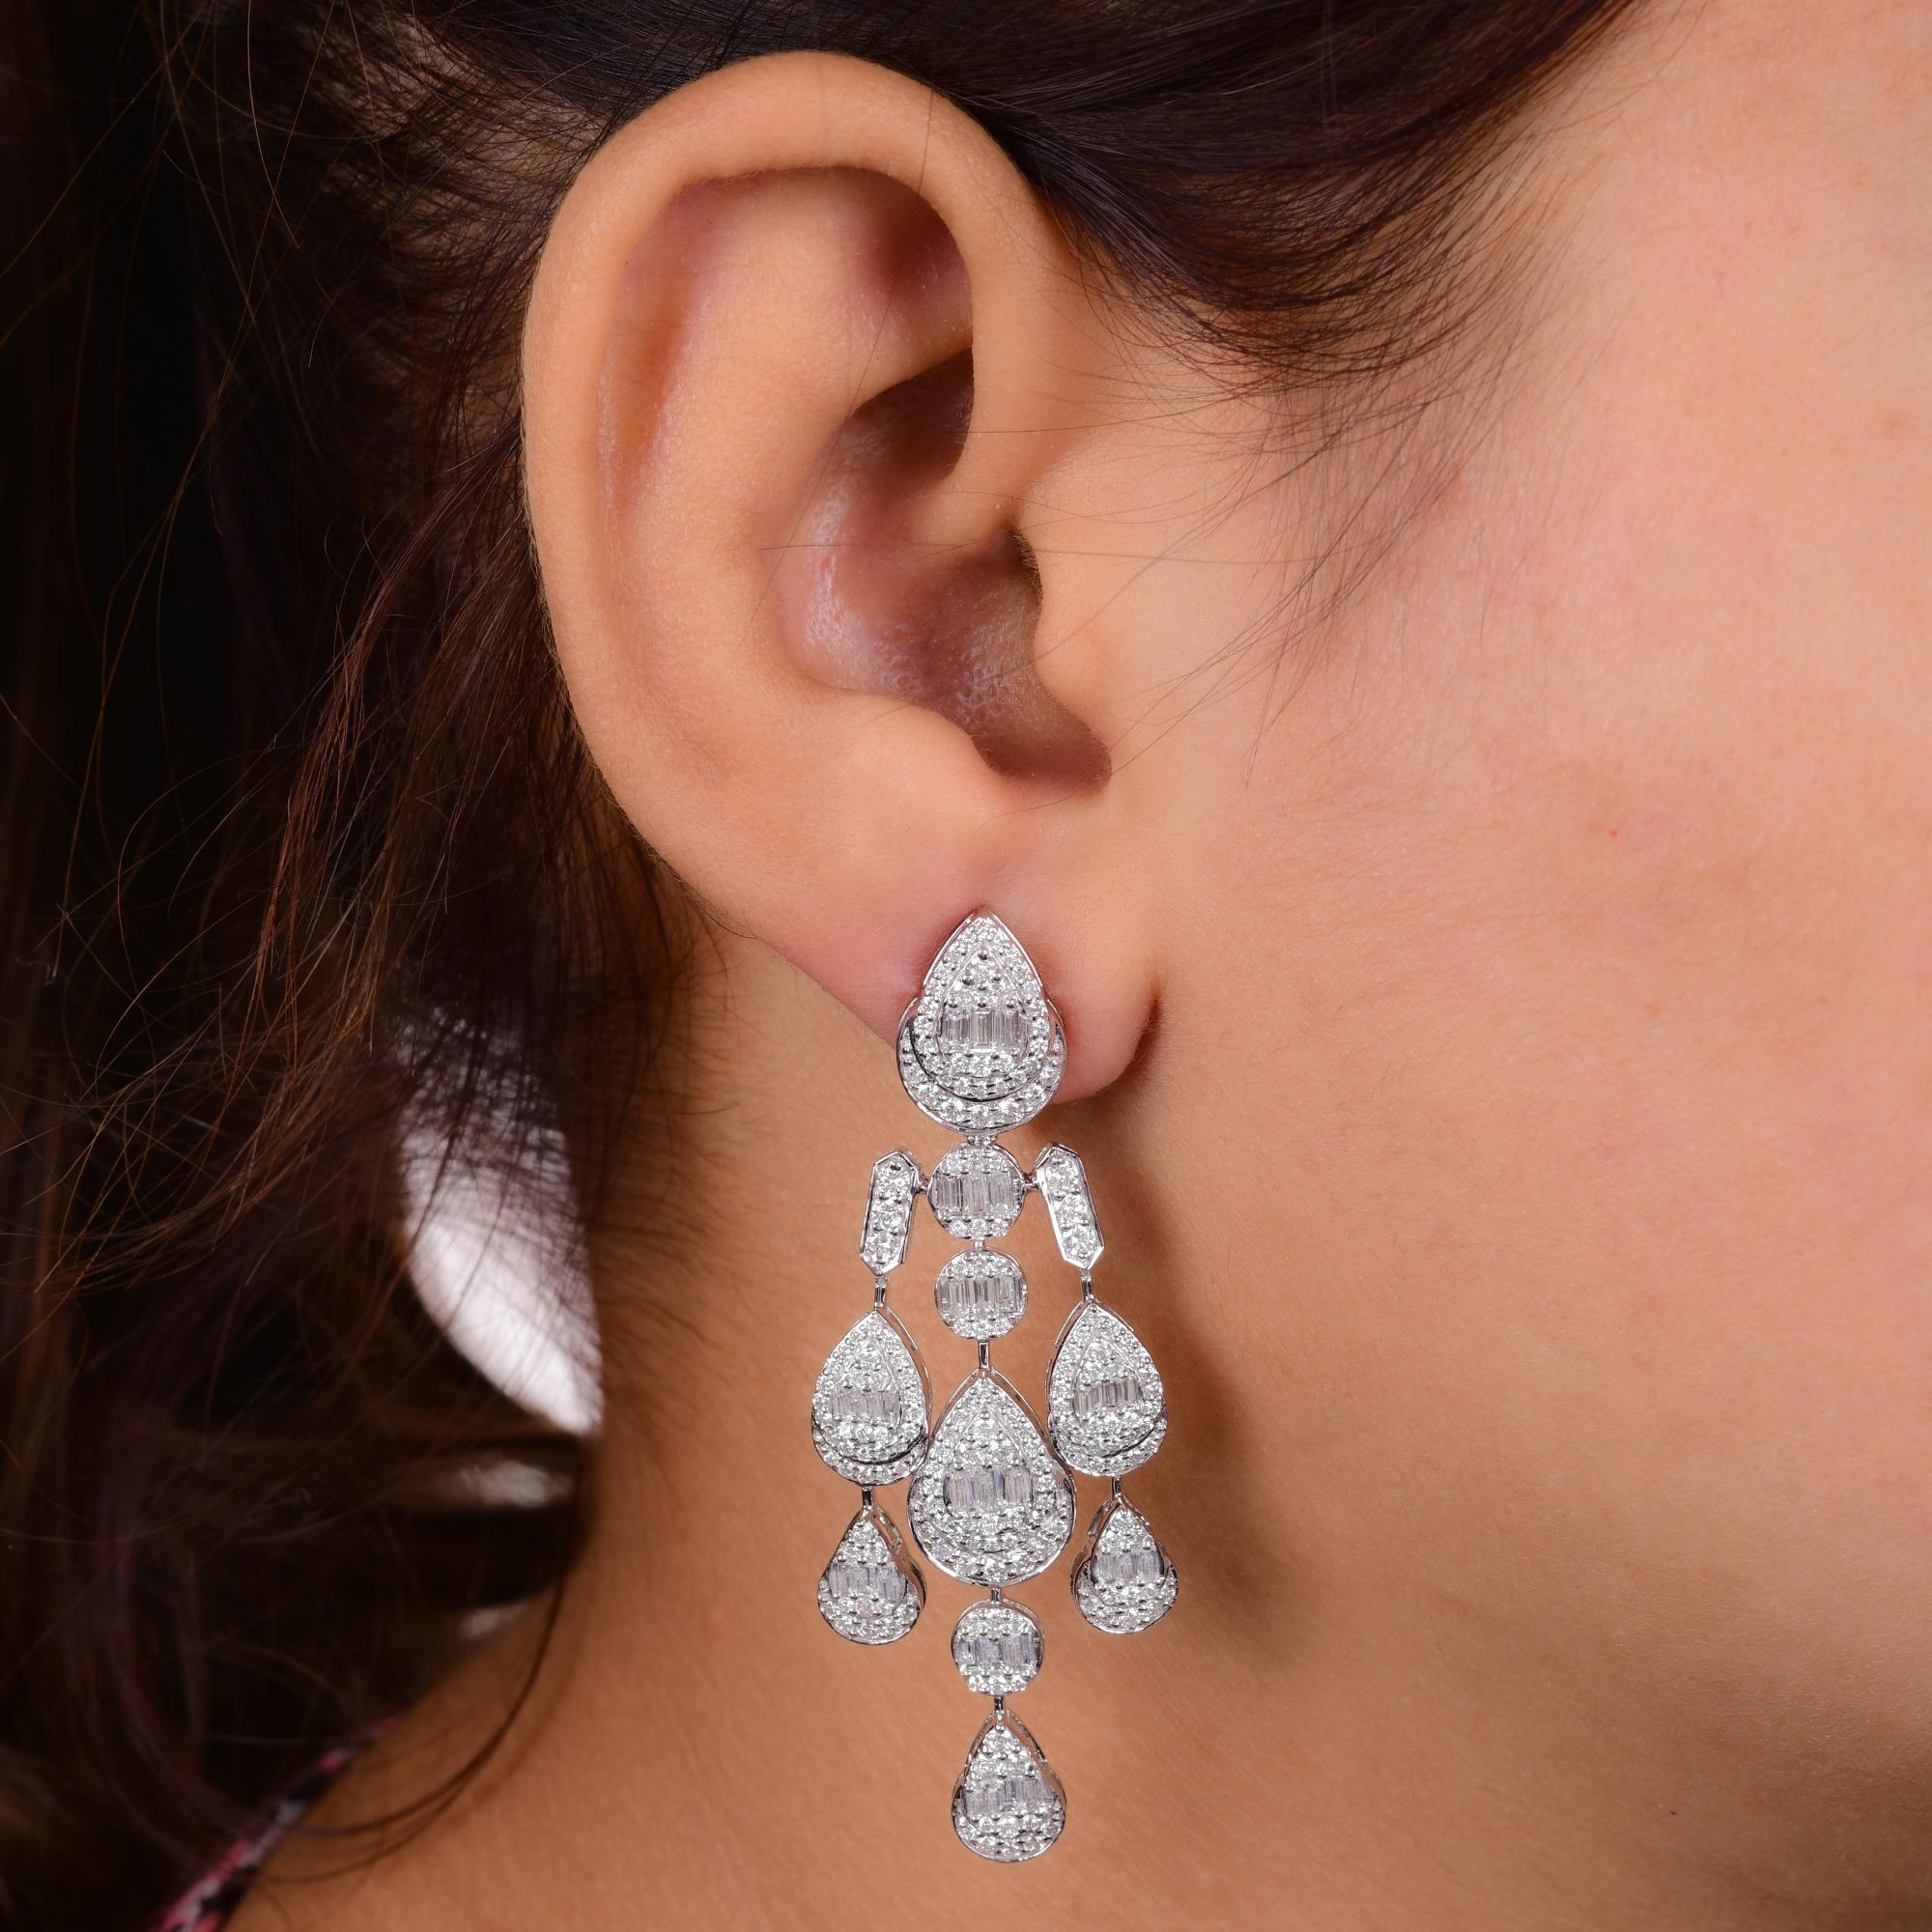 Women's Baguette Diamond Chandelier Earrings Solid 18 Karat White Gold Handmade Jewelry For Sale